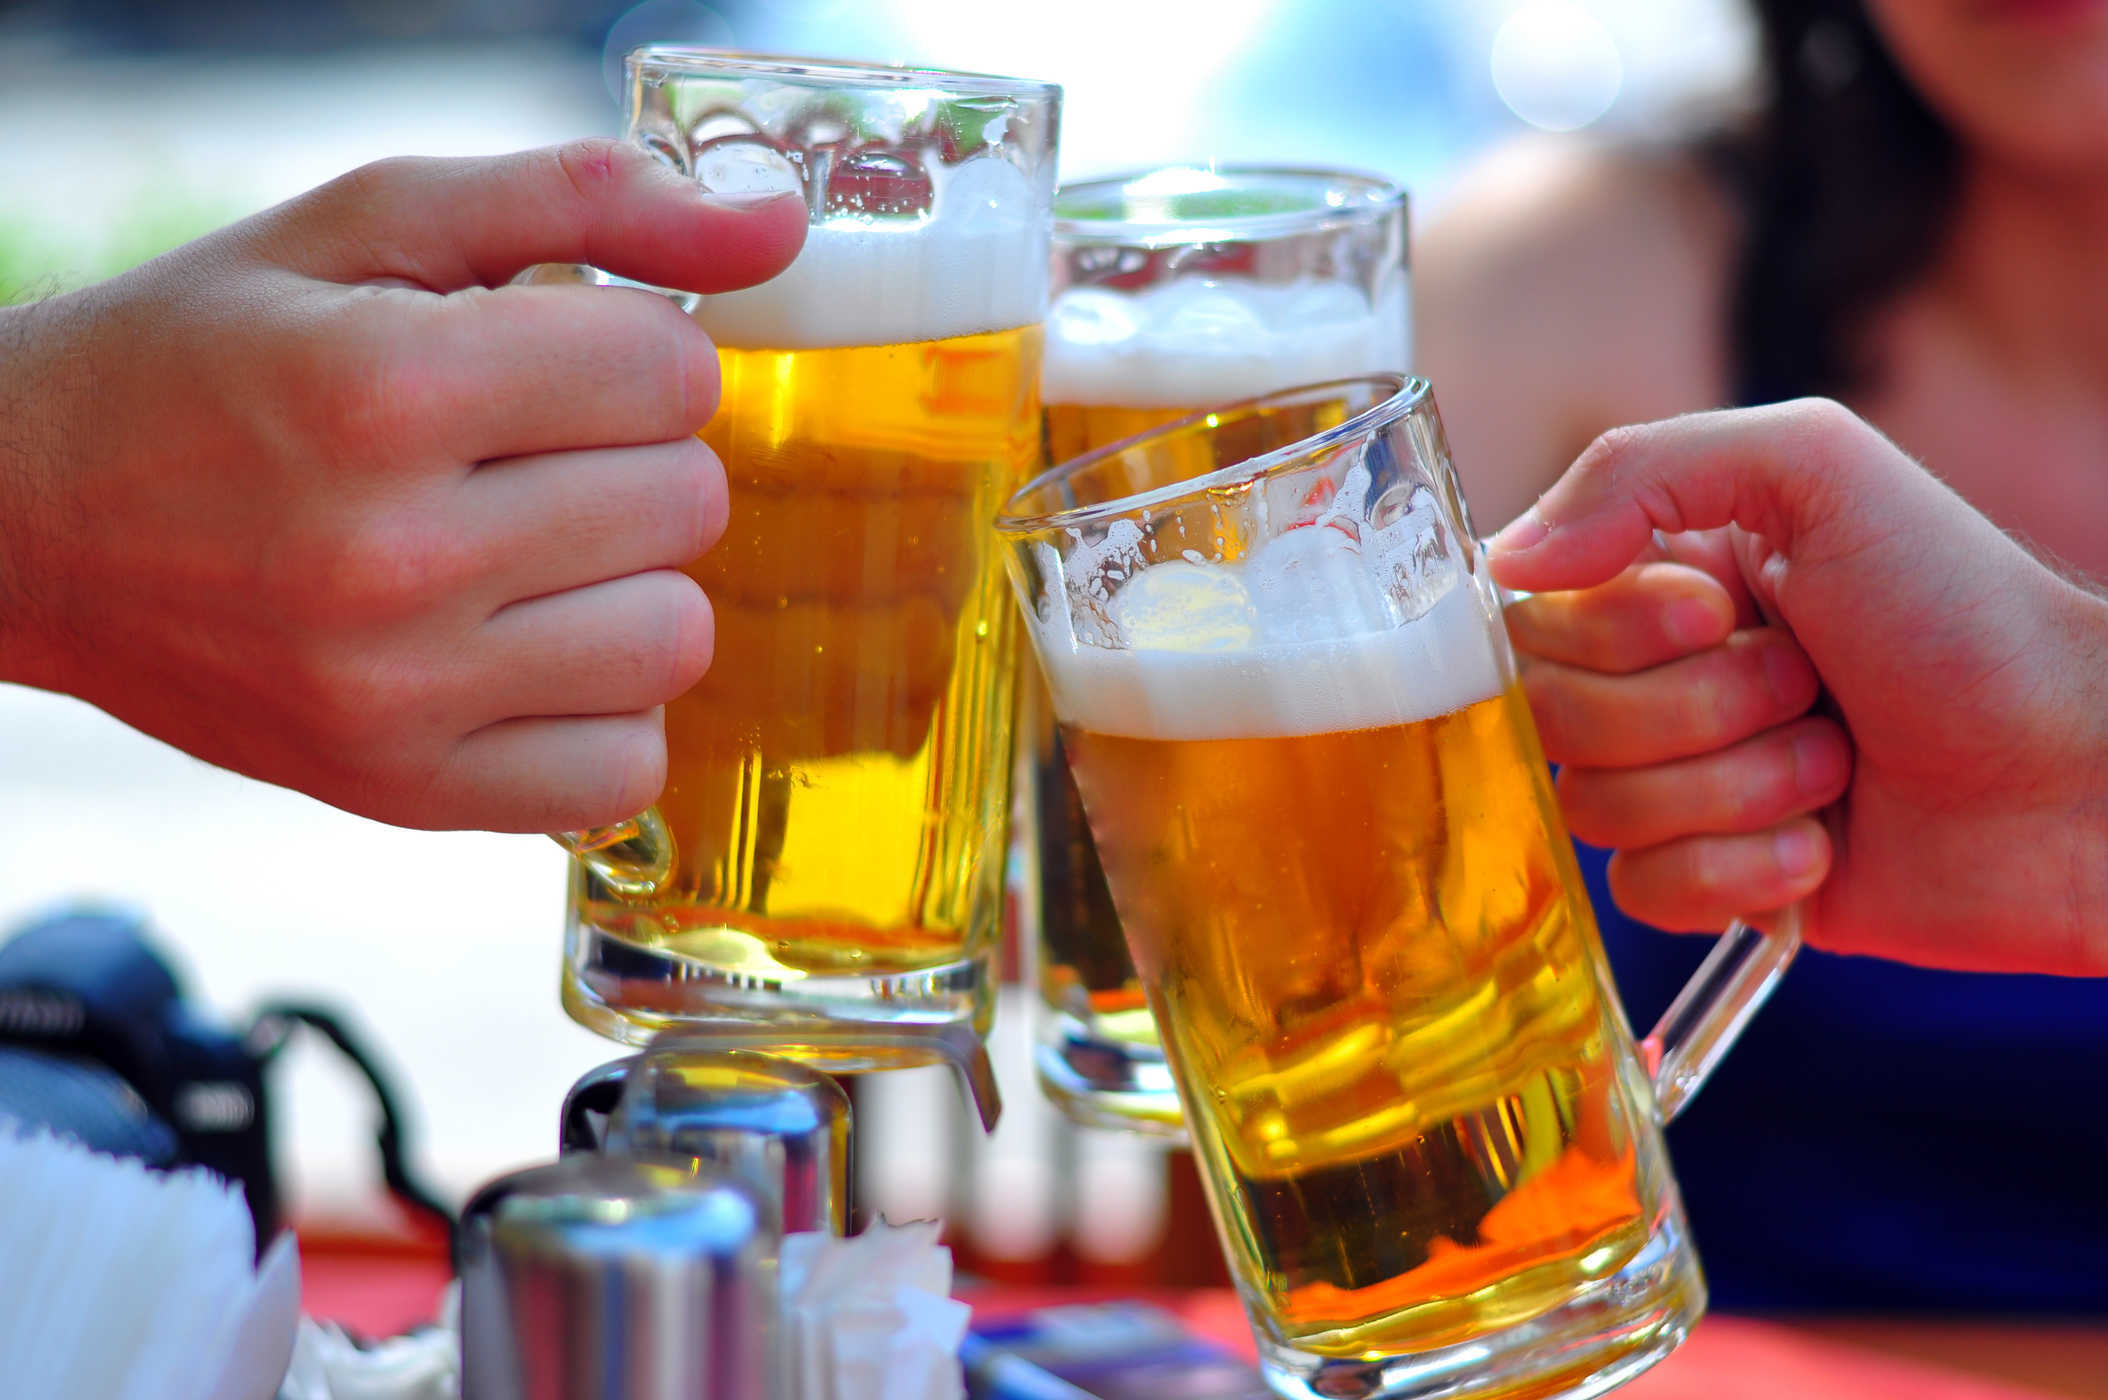 Chuyên gia cảnh báo: 145ml bia rượu mỗi ngày khiến cơ thể suy yếu theo thời gian